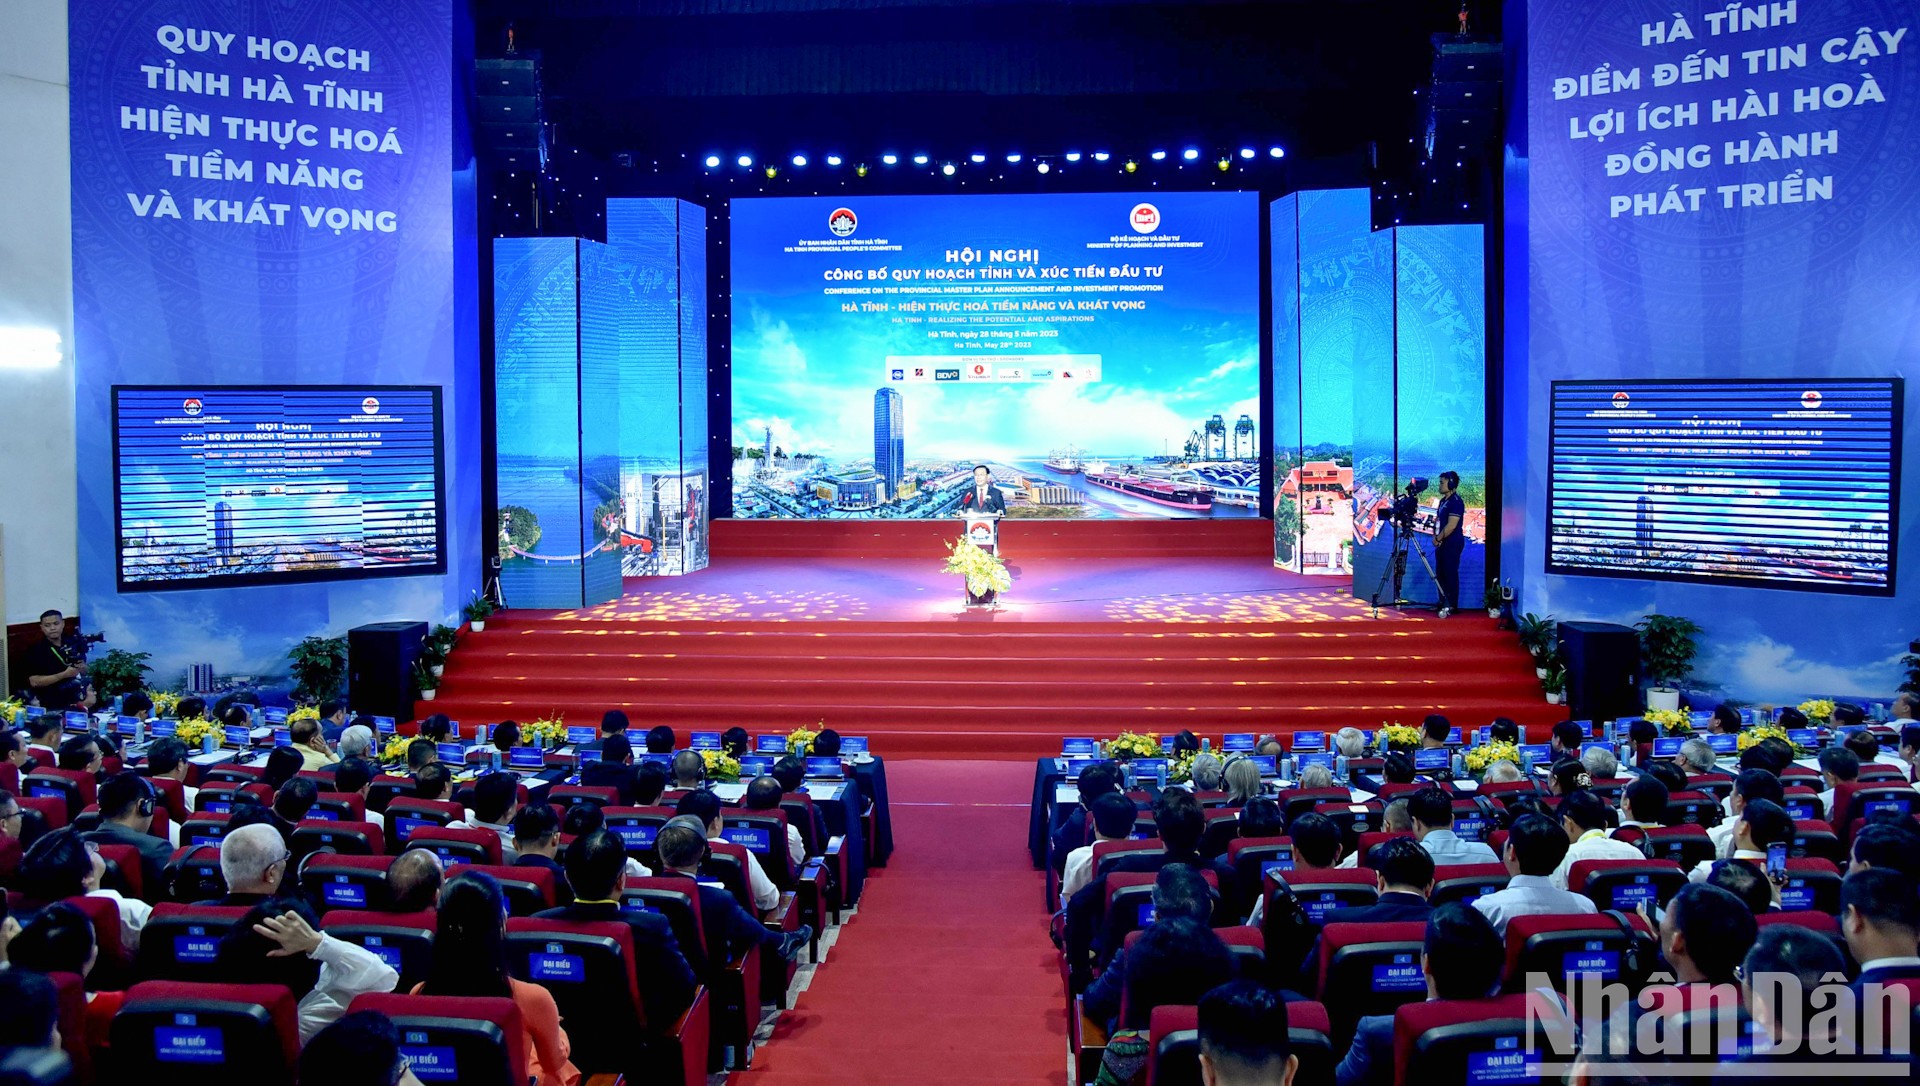 Quang cảnh hội nghị công bố quy hoạch và xúc tiến đầu tư tỉnh Hà Tĩnh.